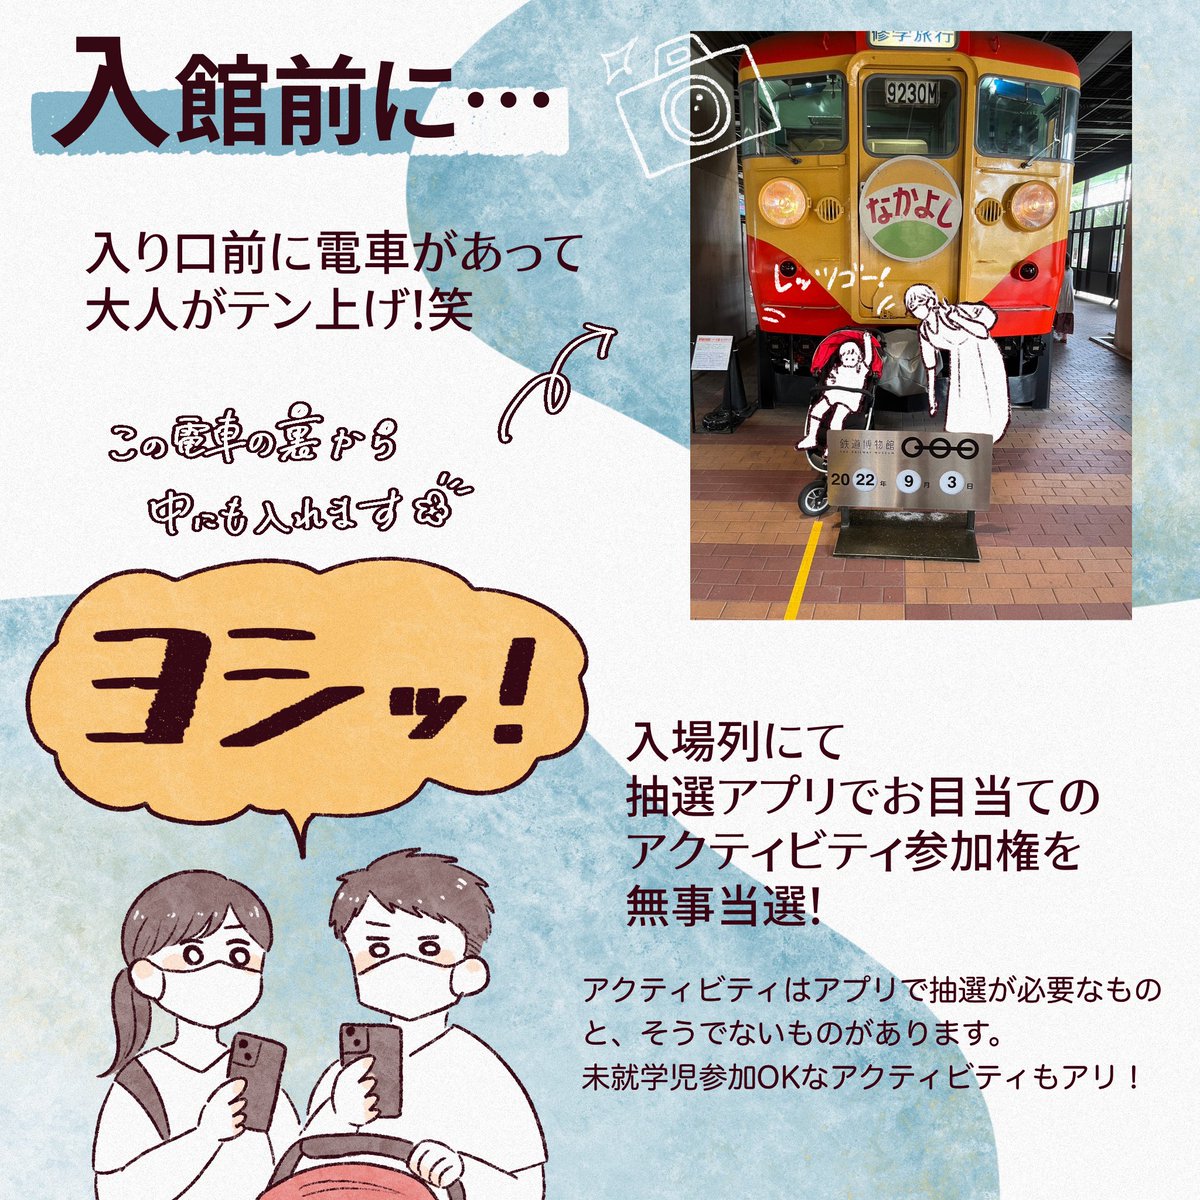 埼玉の鉄道博物館へ行ってきました🚃
でしゃーとかーかー大好きなたっちゃんはもちろん、夫婦共に線路じゃないところに電車があるだけでテンションがあがる族の民なので親もめちゃめちゃ楽しかった…✨
#てっぱく #育児絵日記 #育児漫画 